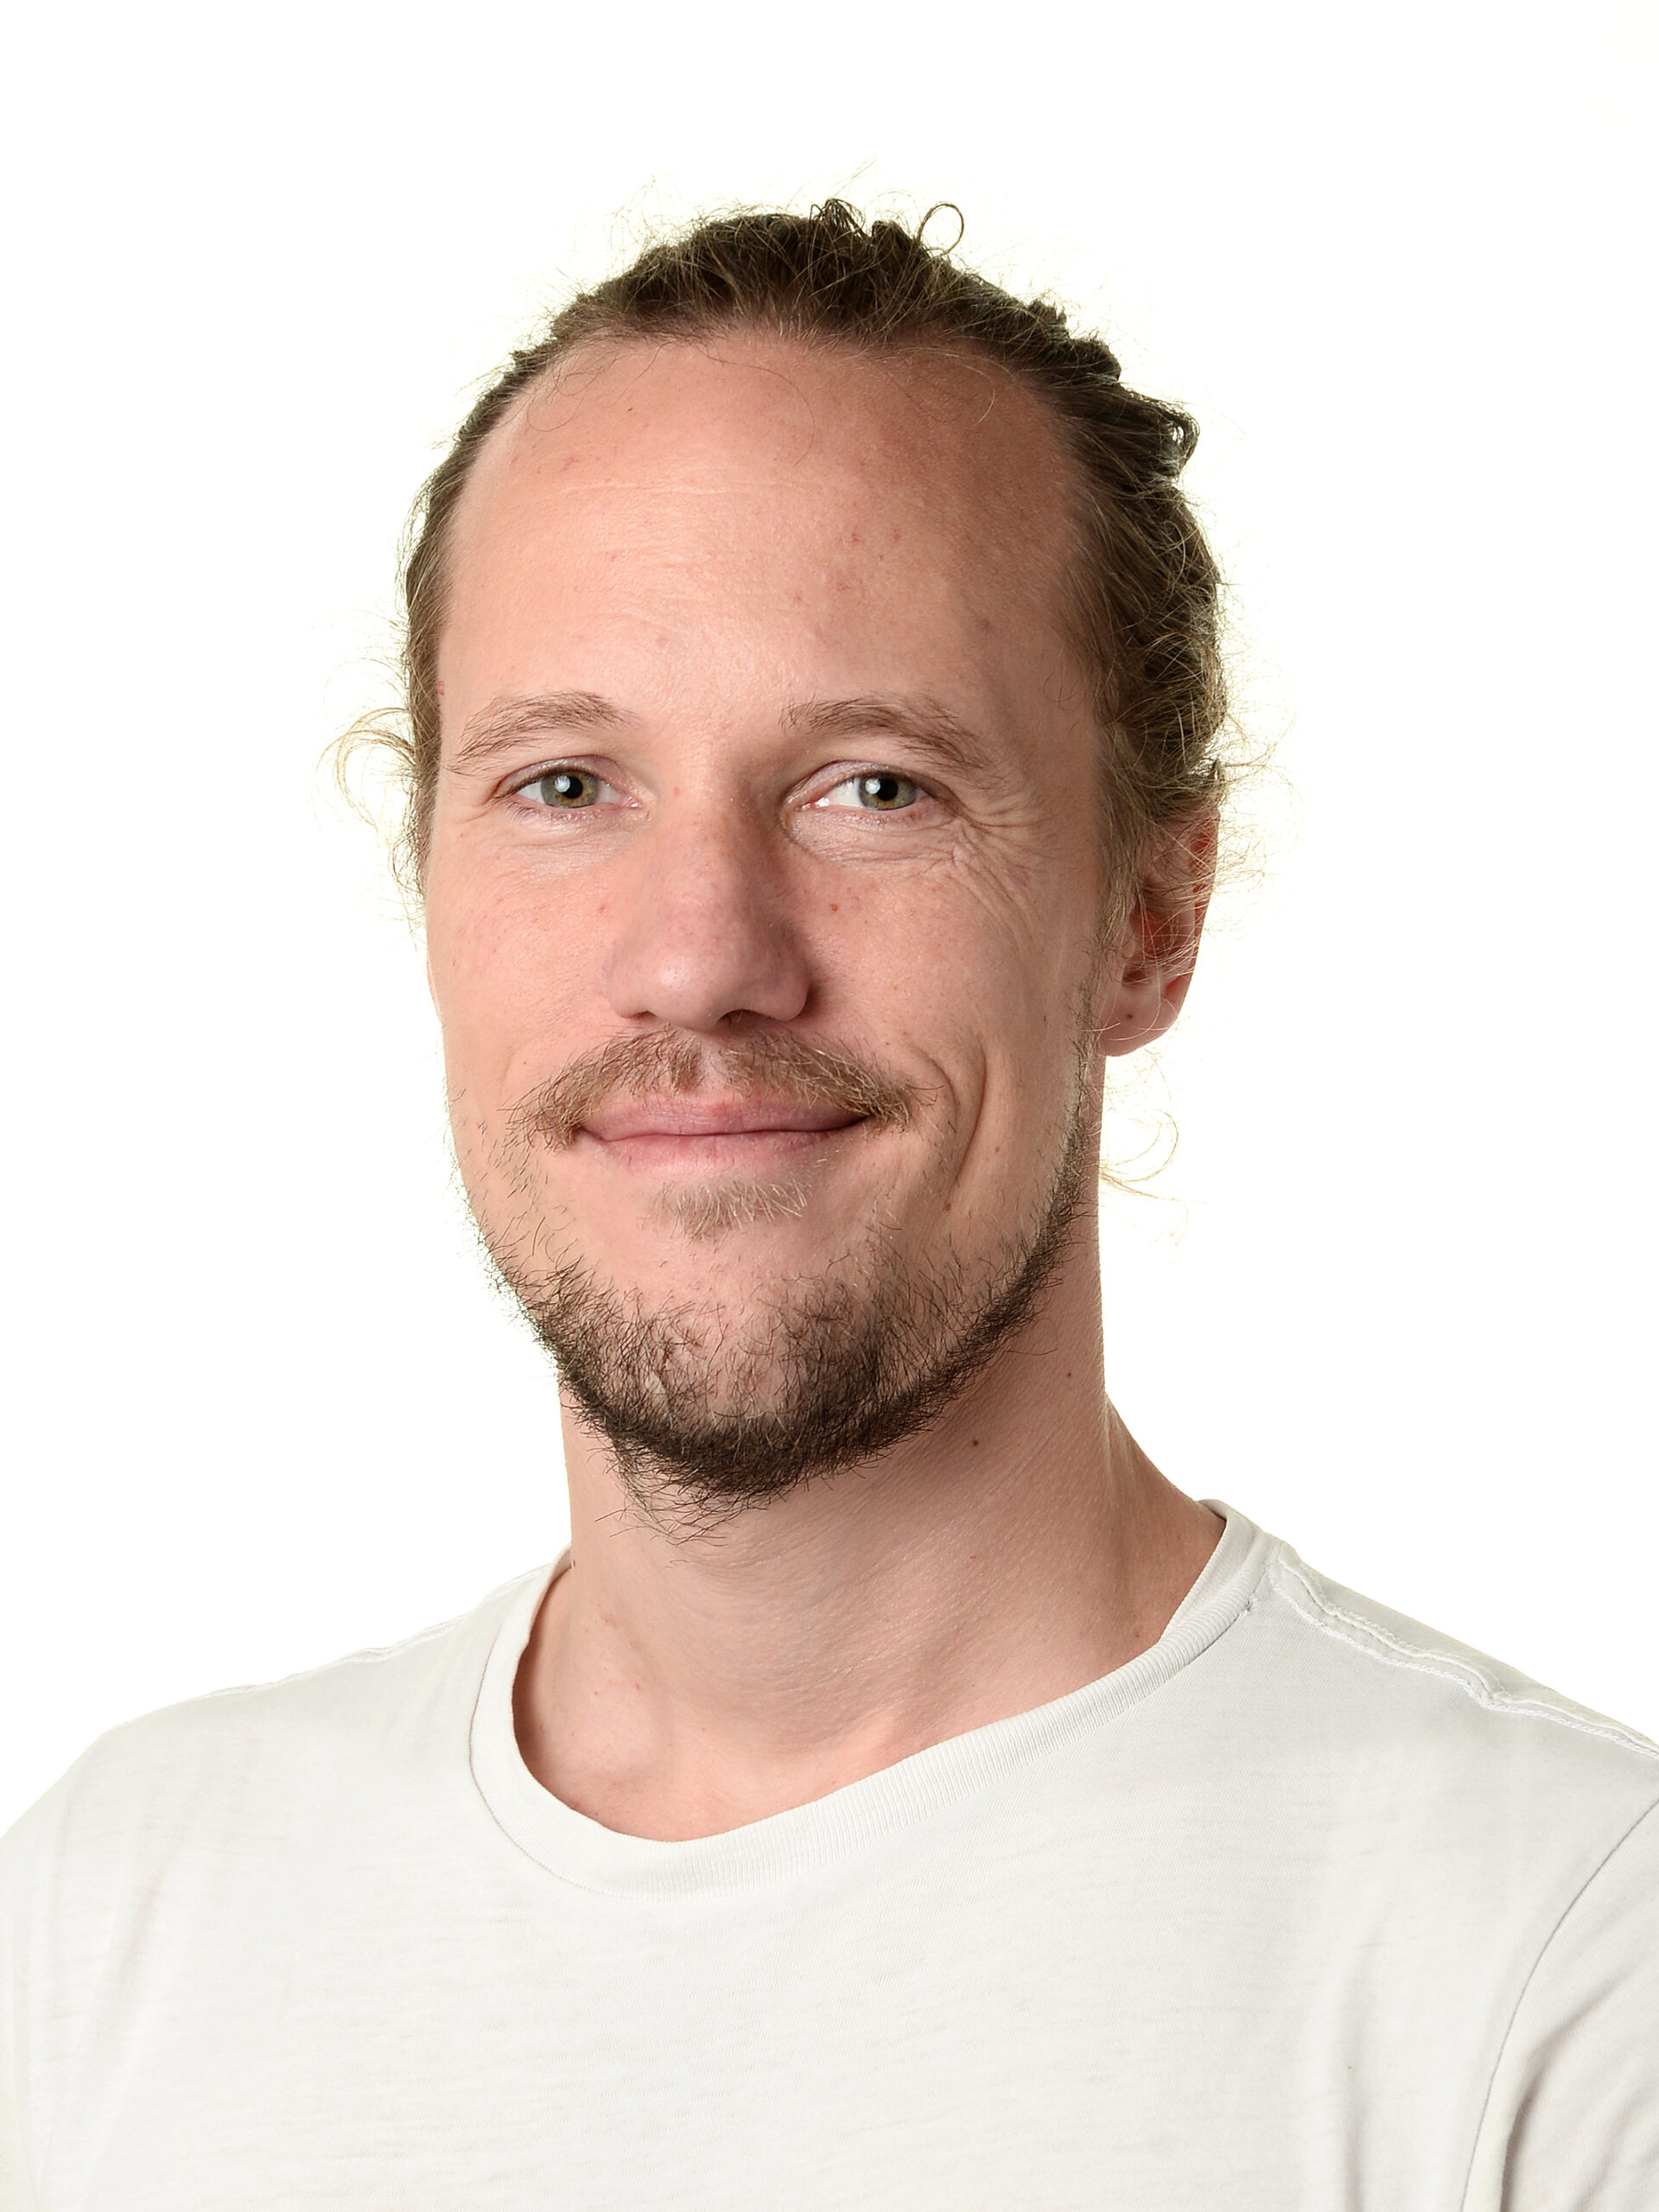 Christoffer Aagaard Knudsen (ck)